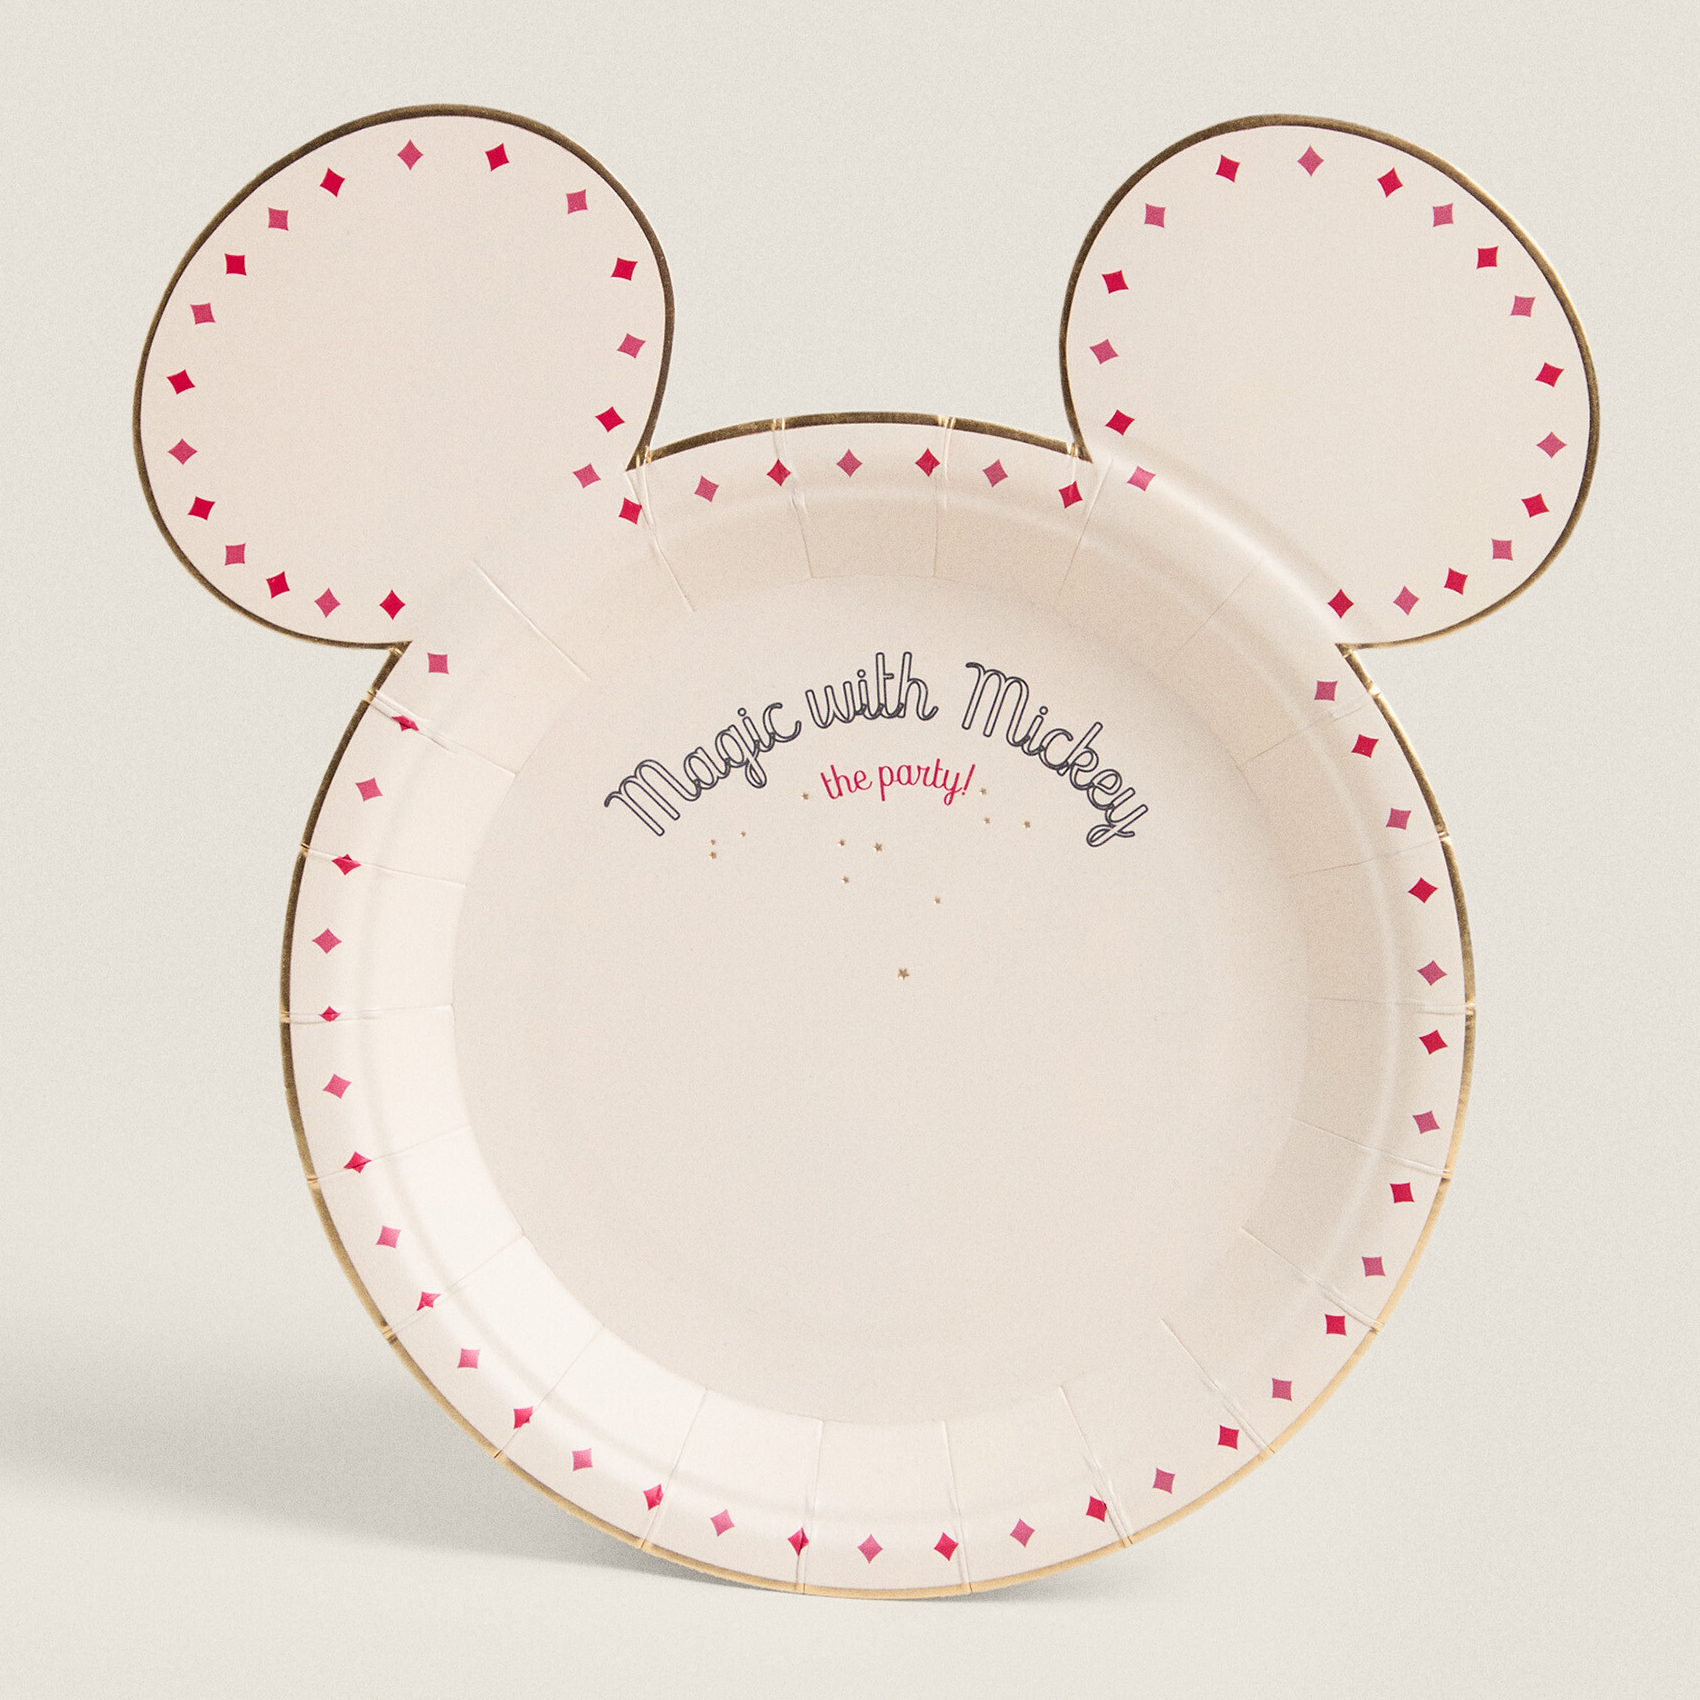 Бумажные тарелки Zara Home Mickey Mouse Disney, белый купырина анна михайловна дисней веселый новый год клуб микки мауса